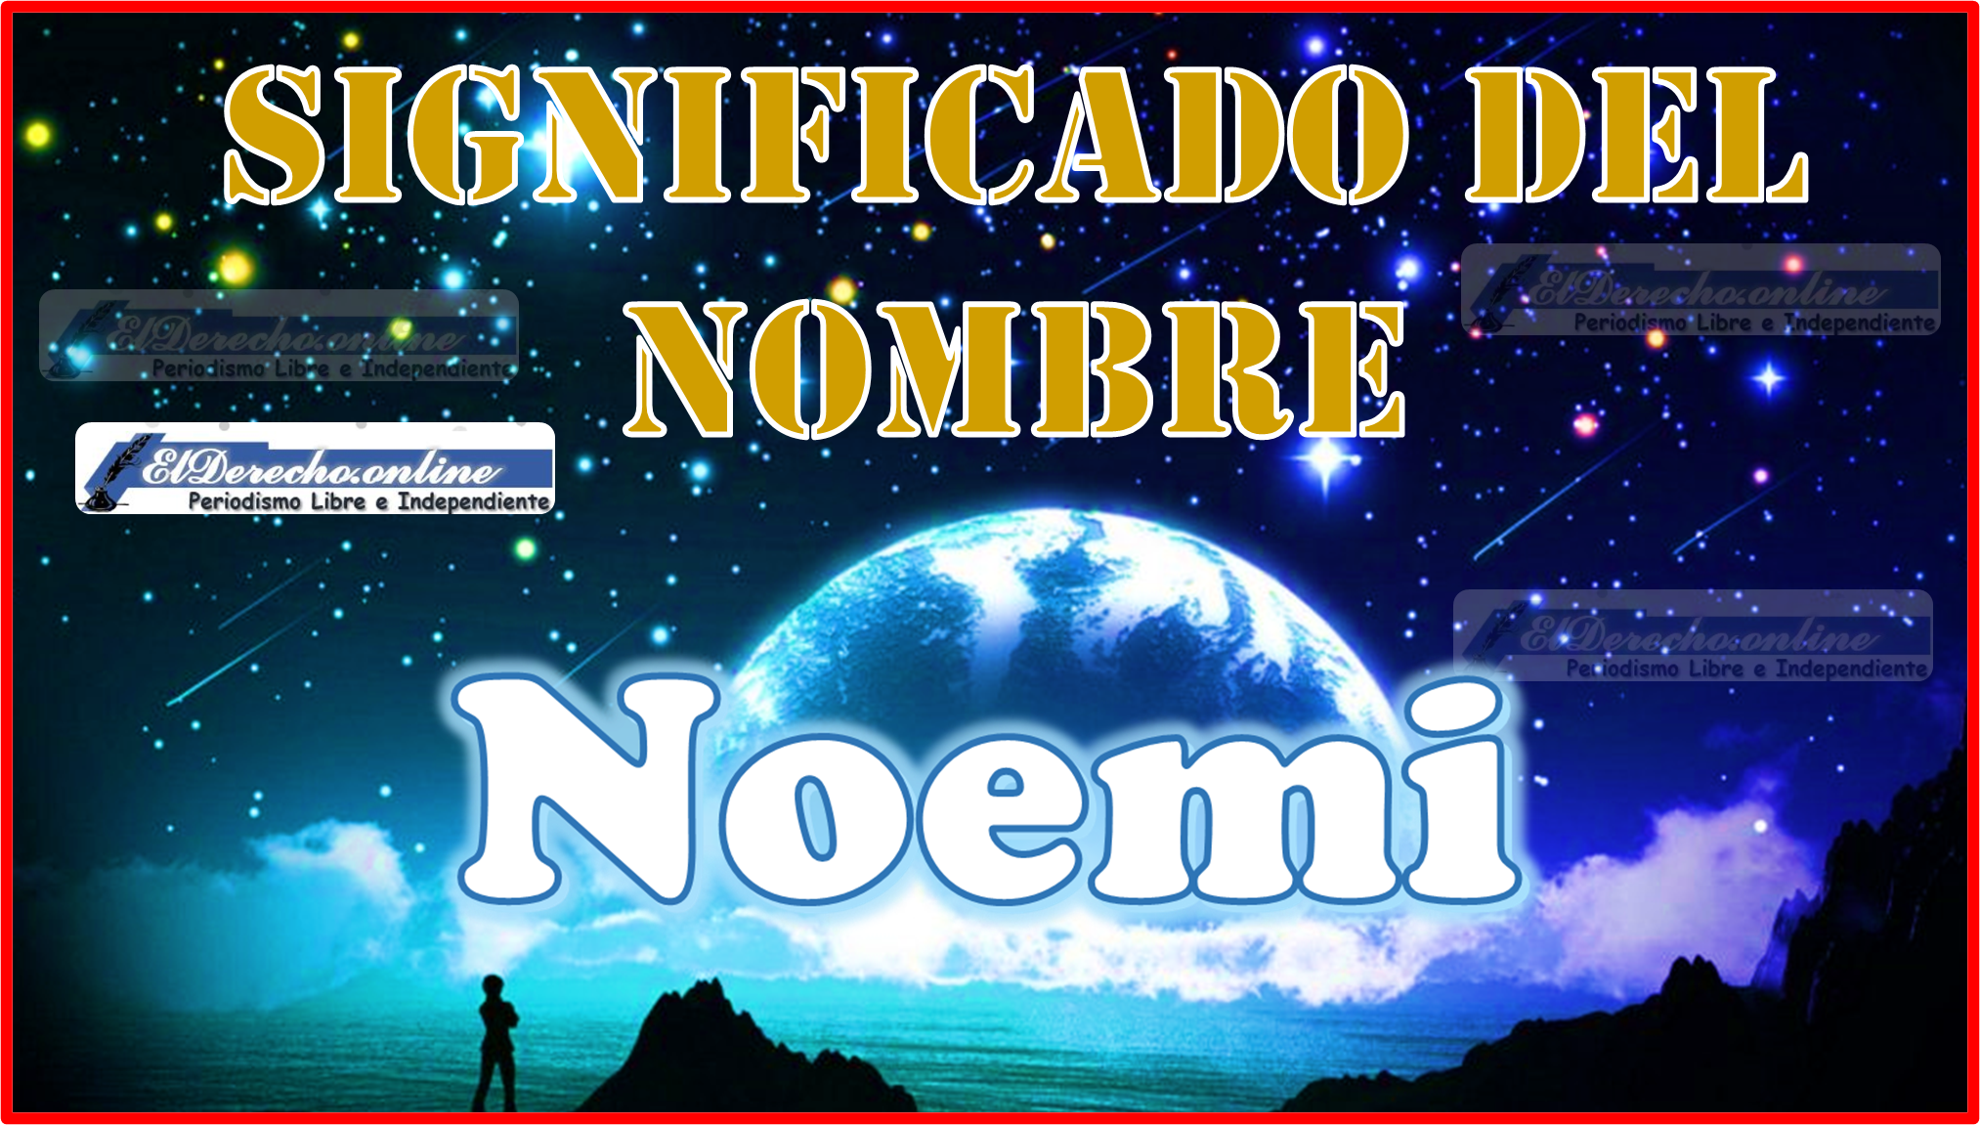 Significado del nombre Noemi, su origen y más